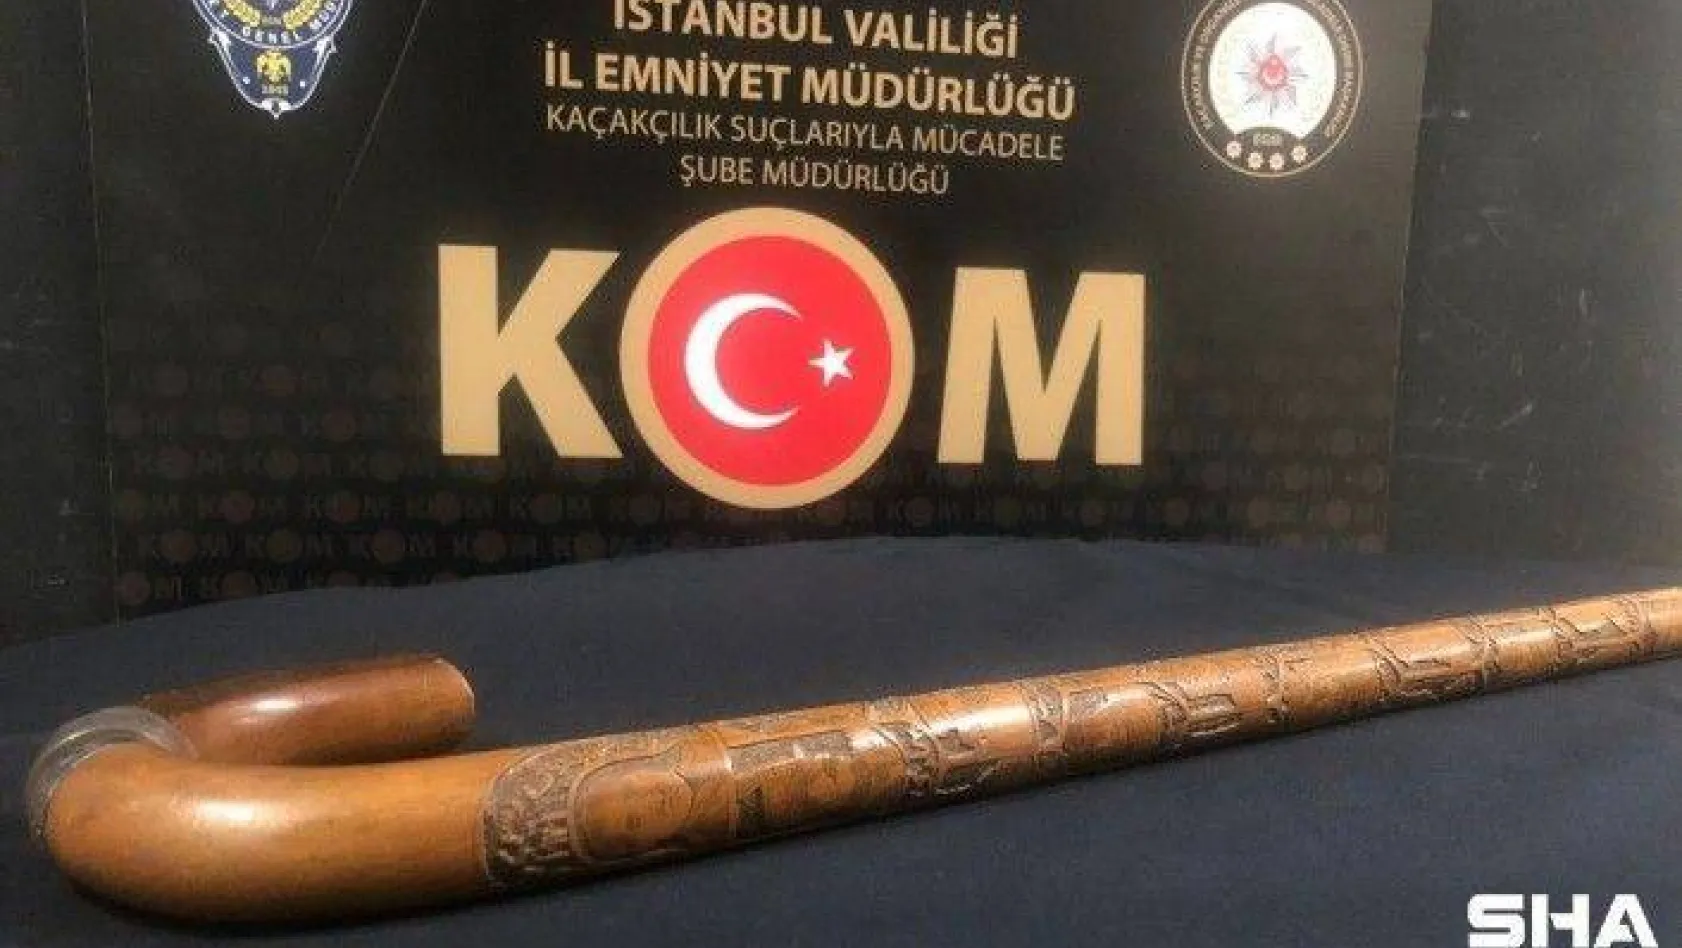 Atatürk'e ait olduğu belirtilerek müzayedede satılmak istenen bastona el konuldu